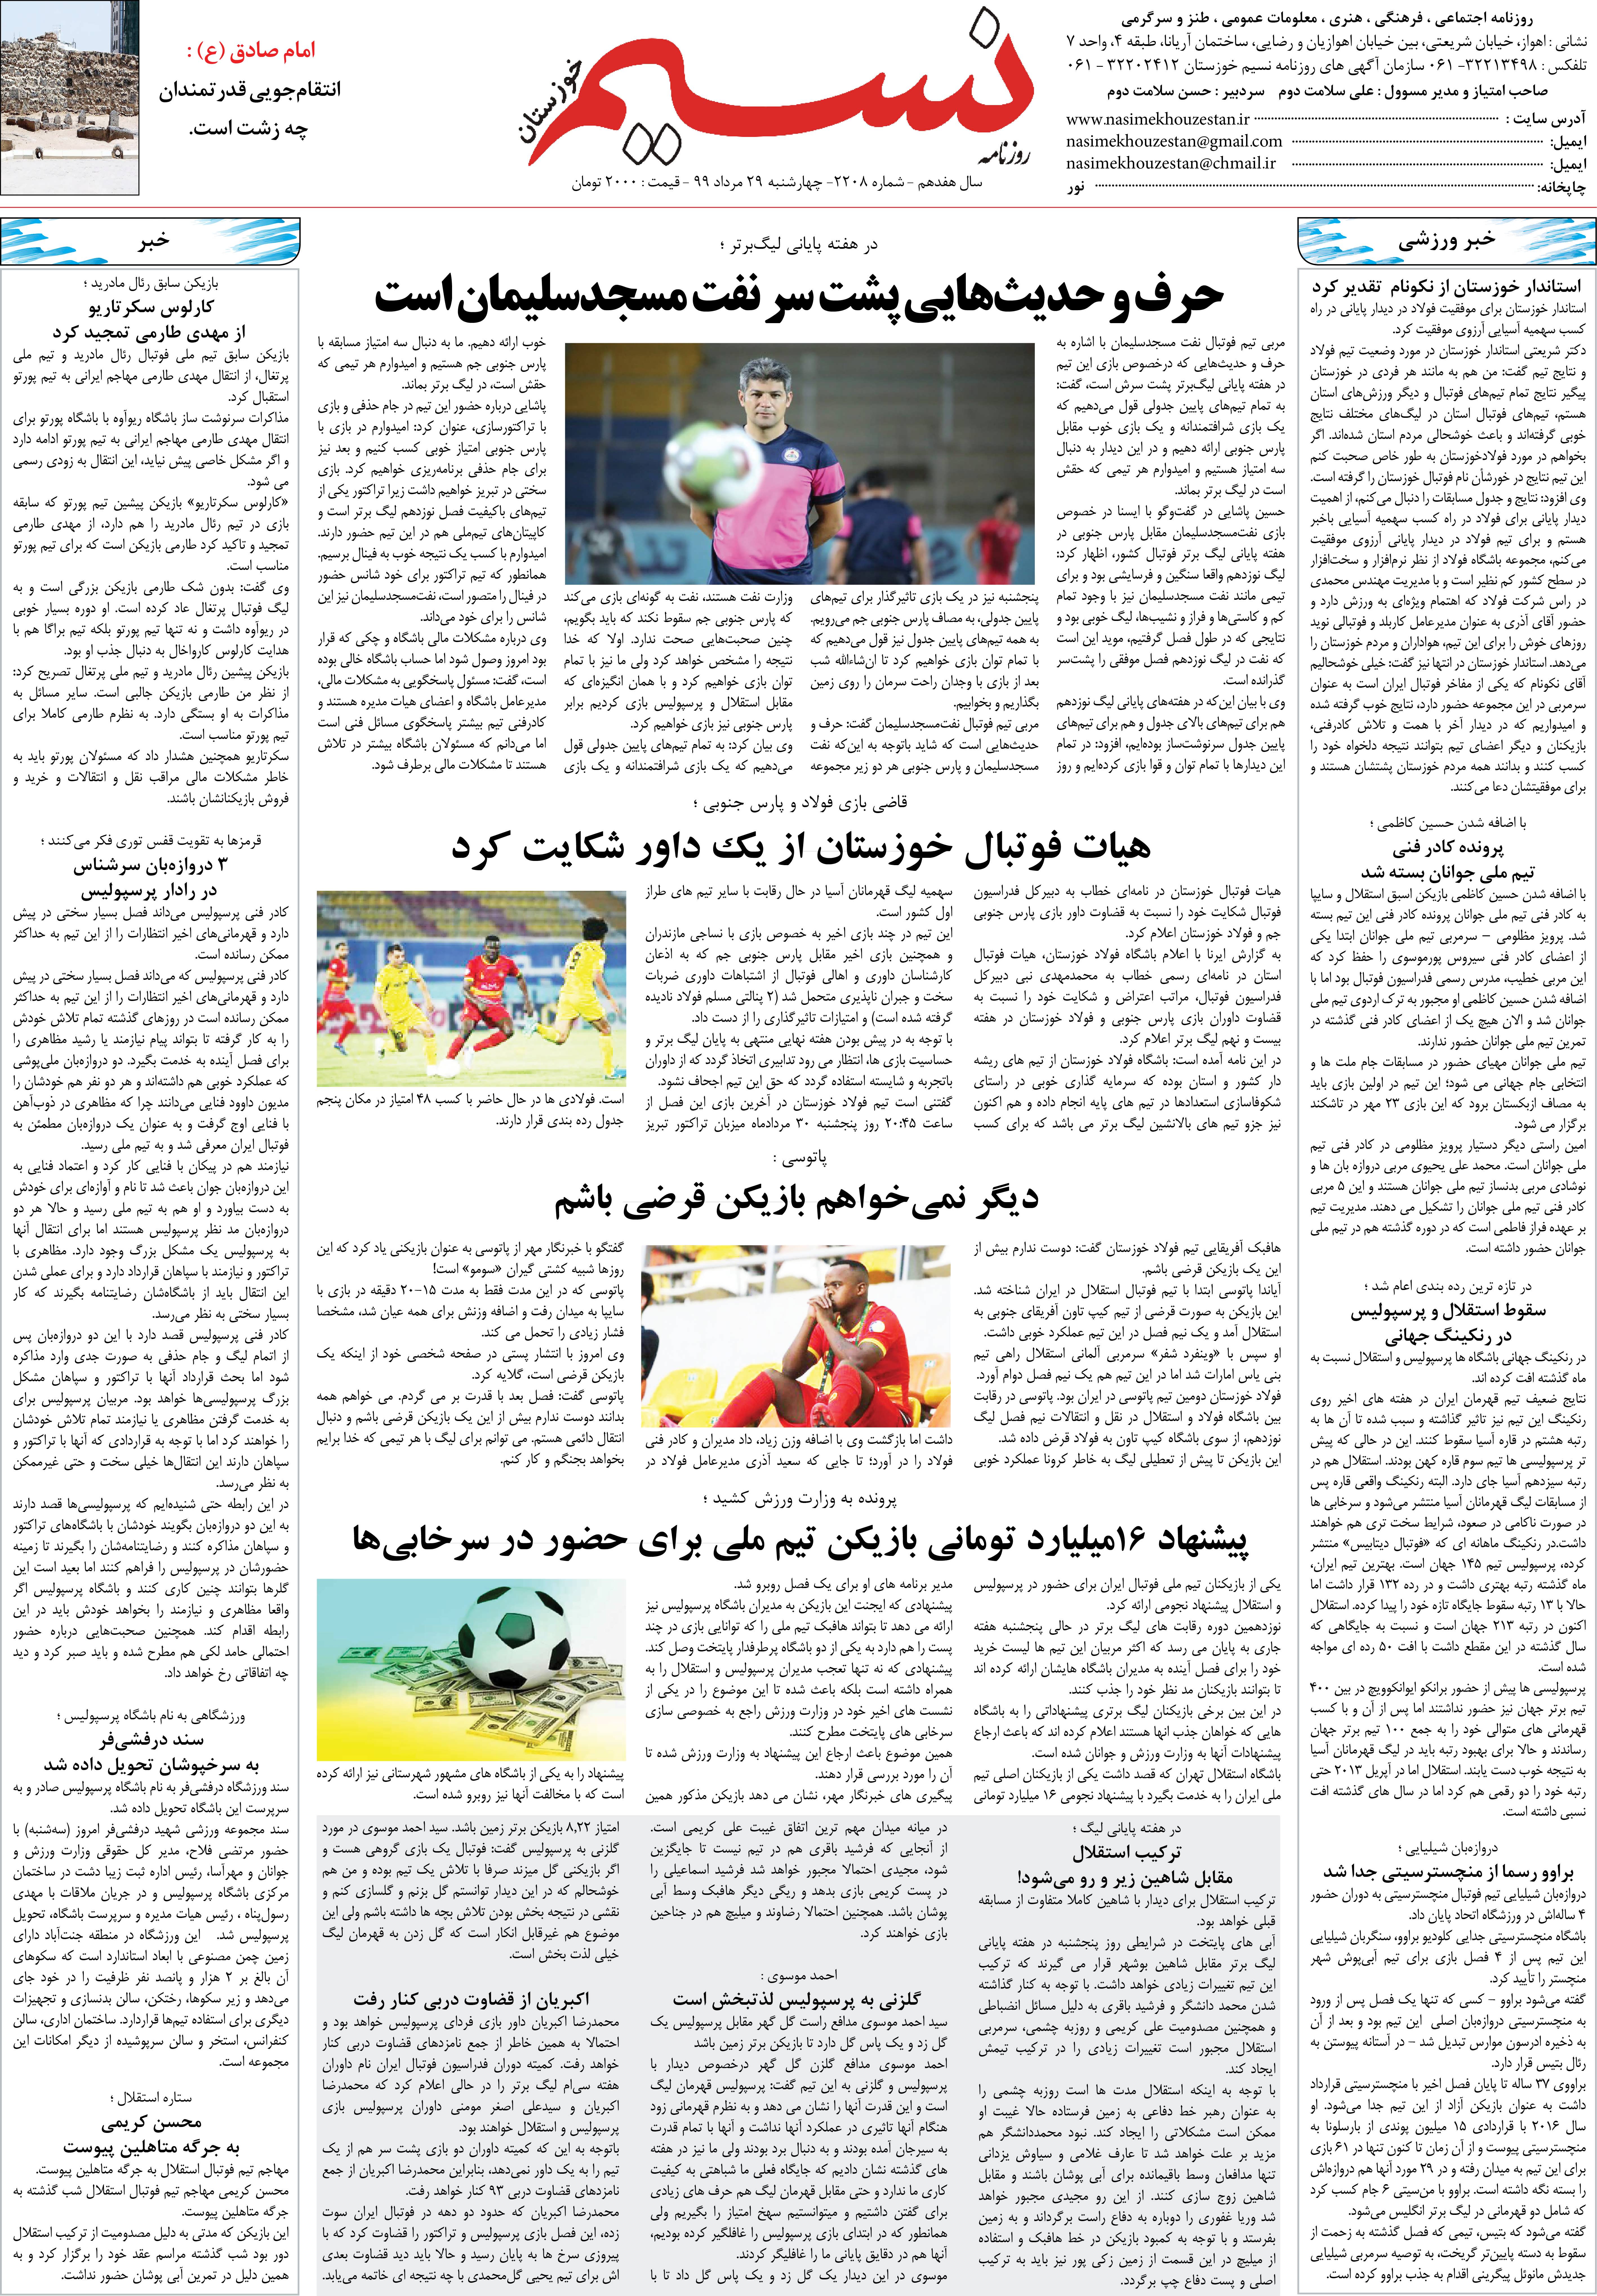 صفحه آخر روزنامه نسیم شماره 2208